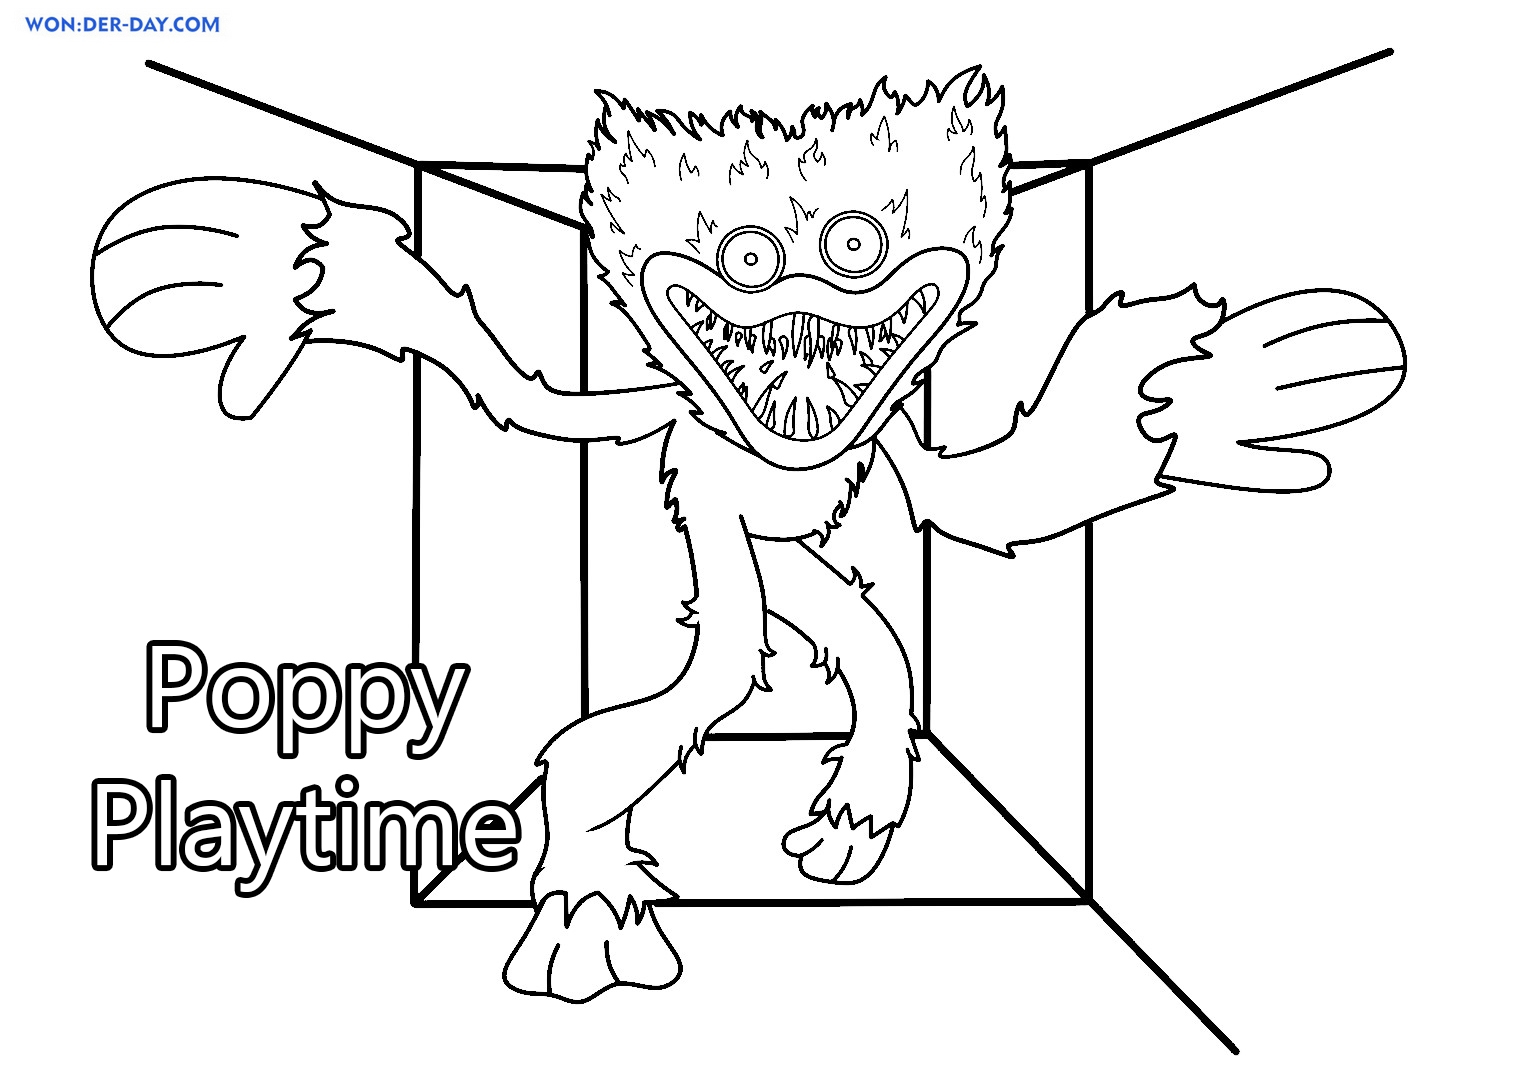 Как нарисовать кота из poppy playtime 3. Раскраскапопиплейтайм. Поппи Плейтайм раскраска. Раскраска монстры. Поппи Плай тайм раскраска.